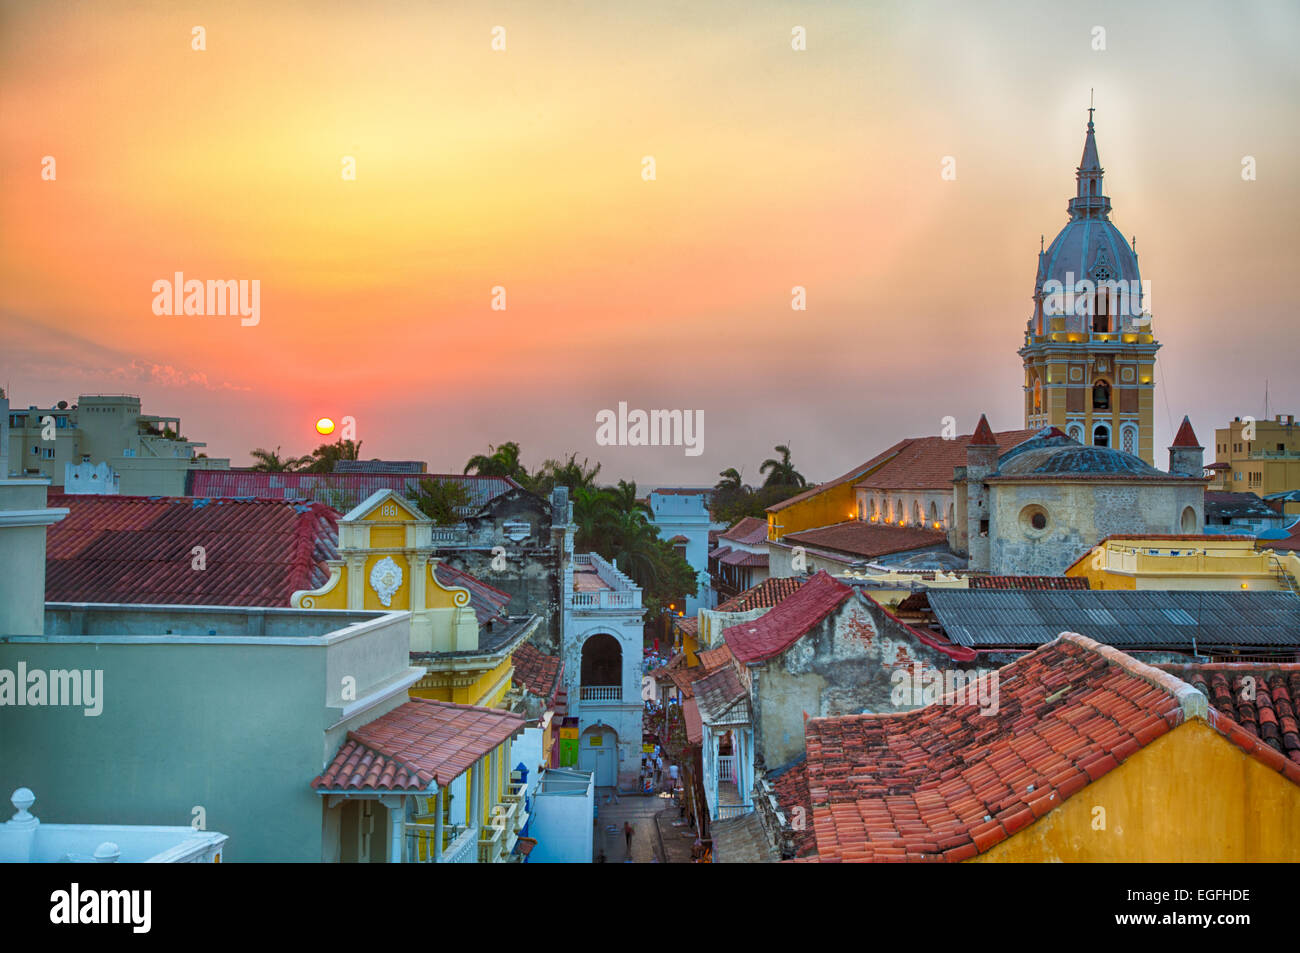 Zeigen Sie über die Dächer der alten Stadt Cartagena eine lebendige Sonnenuntergang an. Der Turm der Kathedrale von Cartagena steht groß und pr Stockfoto